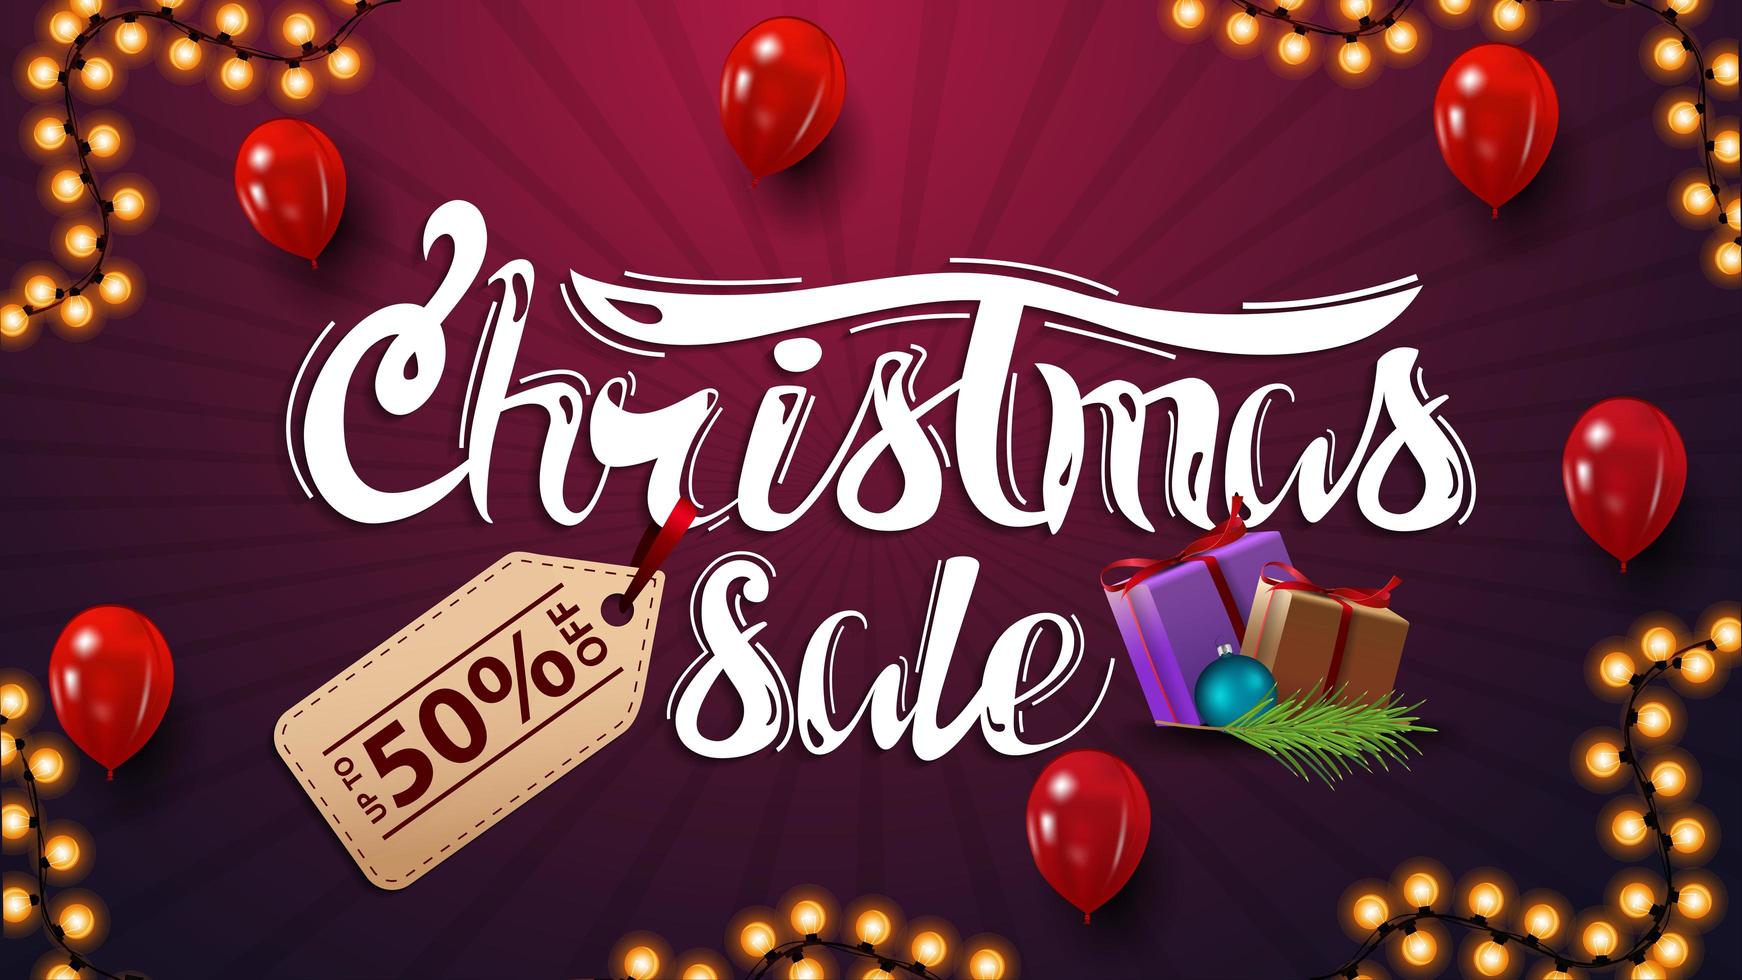 jul försäljning, rabatt banner med vackra bokstäver med prislapp. rabatt lila banner med röda ballonger och julklappar vektor